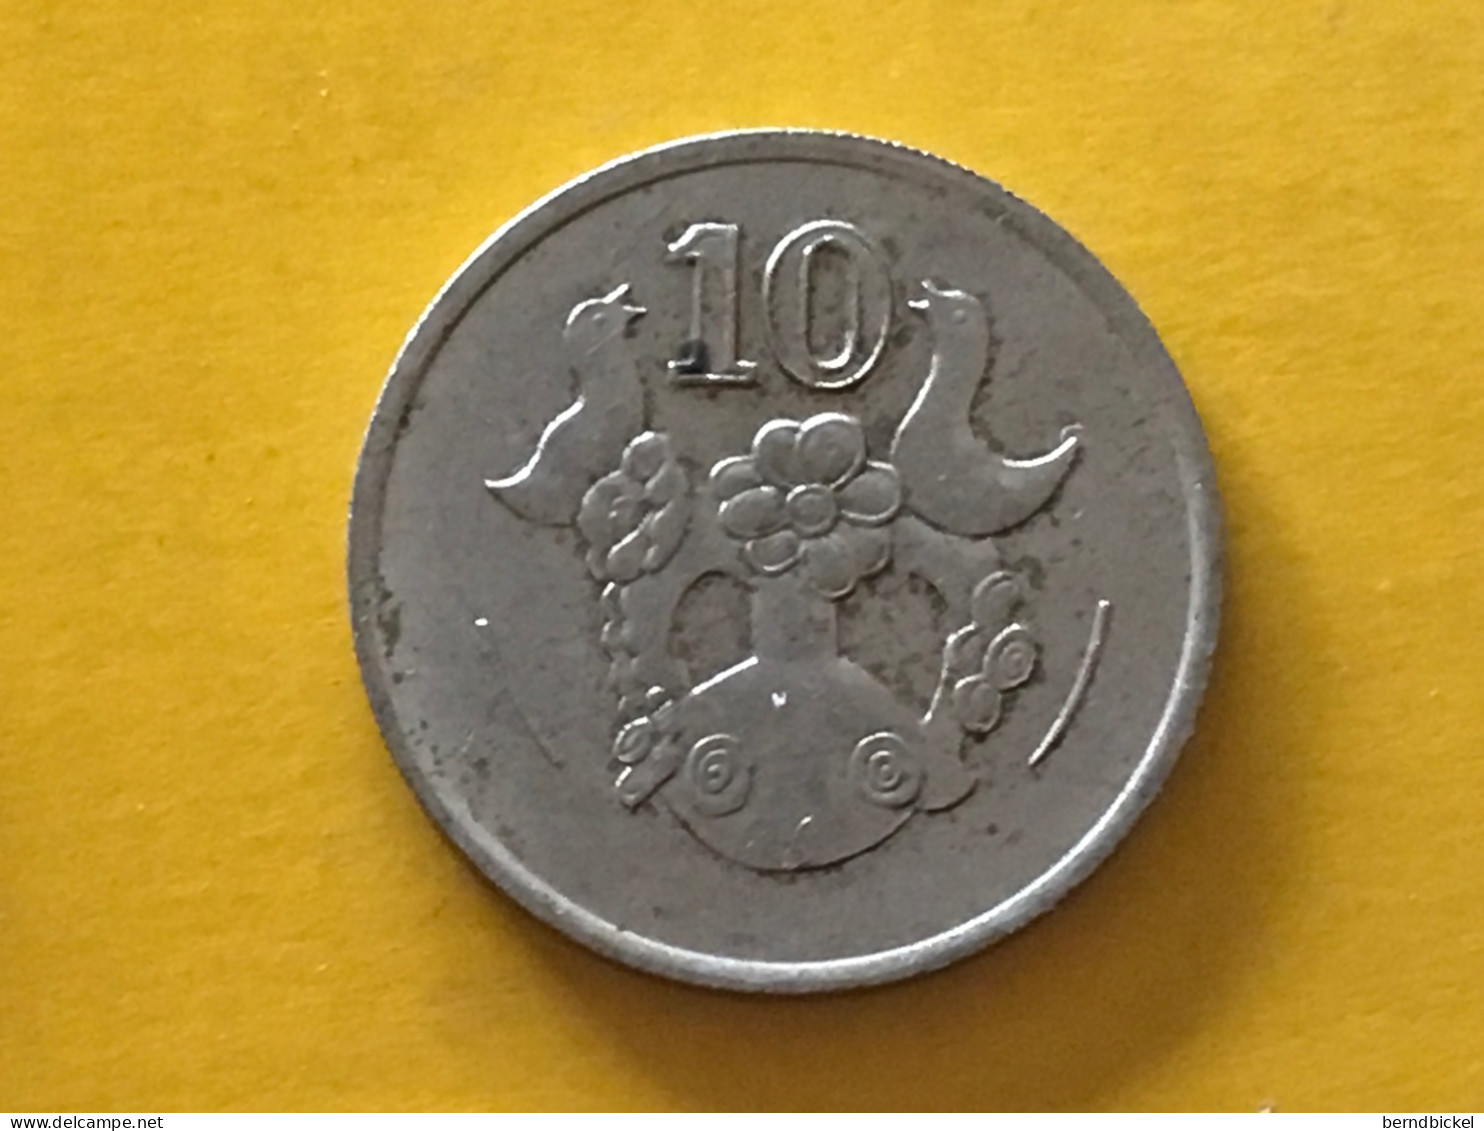 Münze Münzen Umlaufmünze Zypern 10 Cent 1993 - Chypre